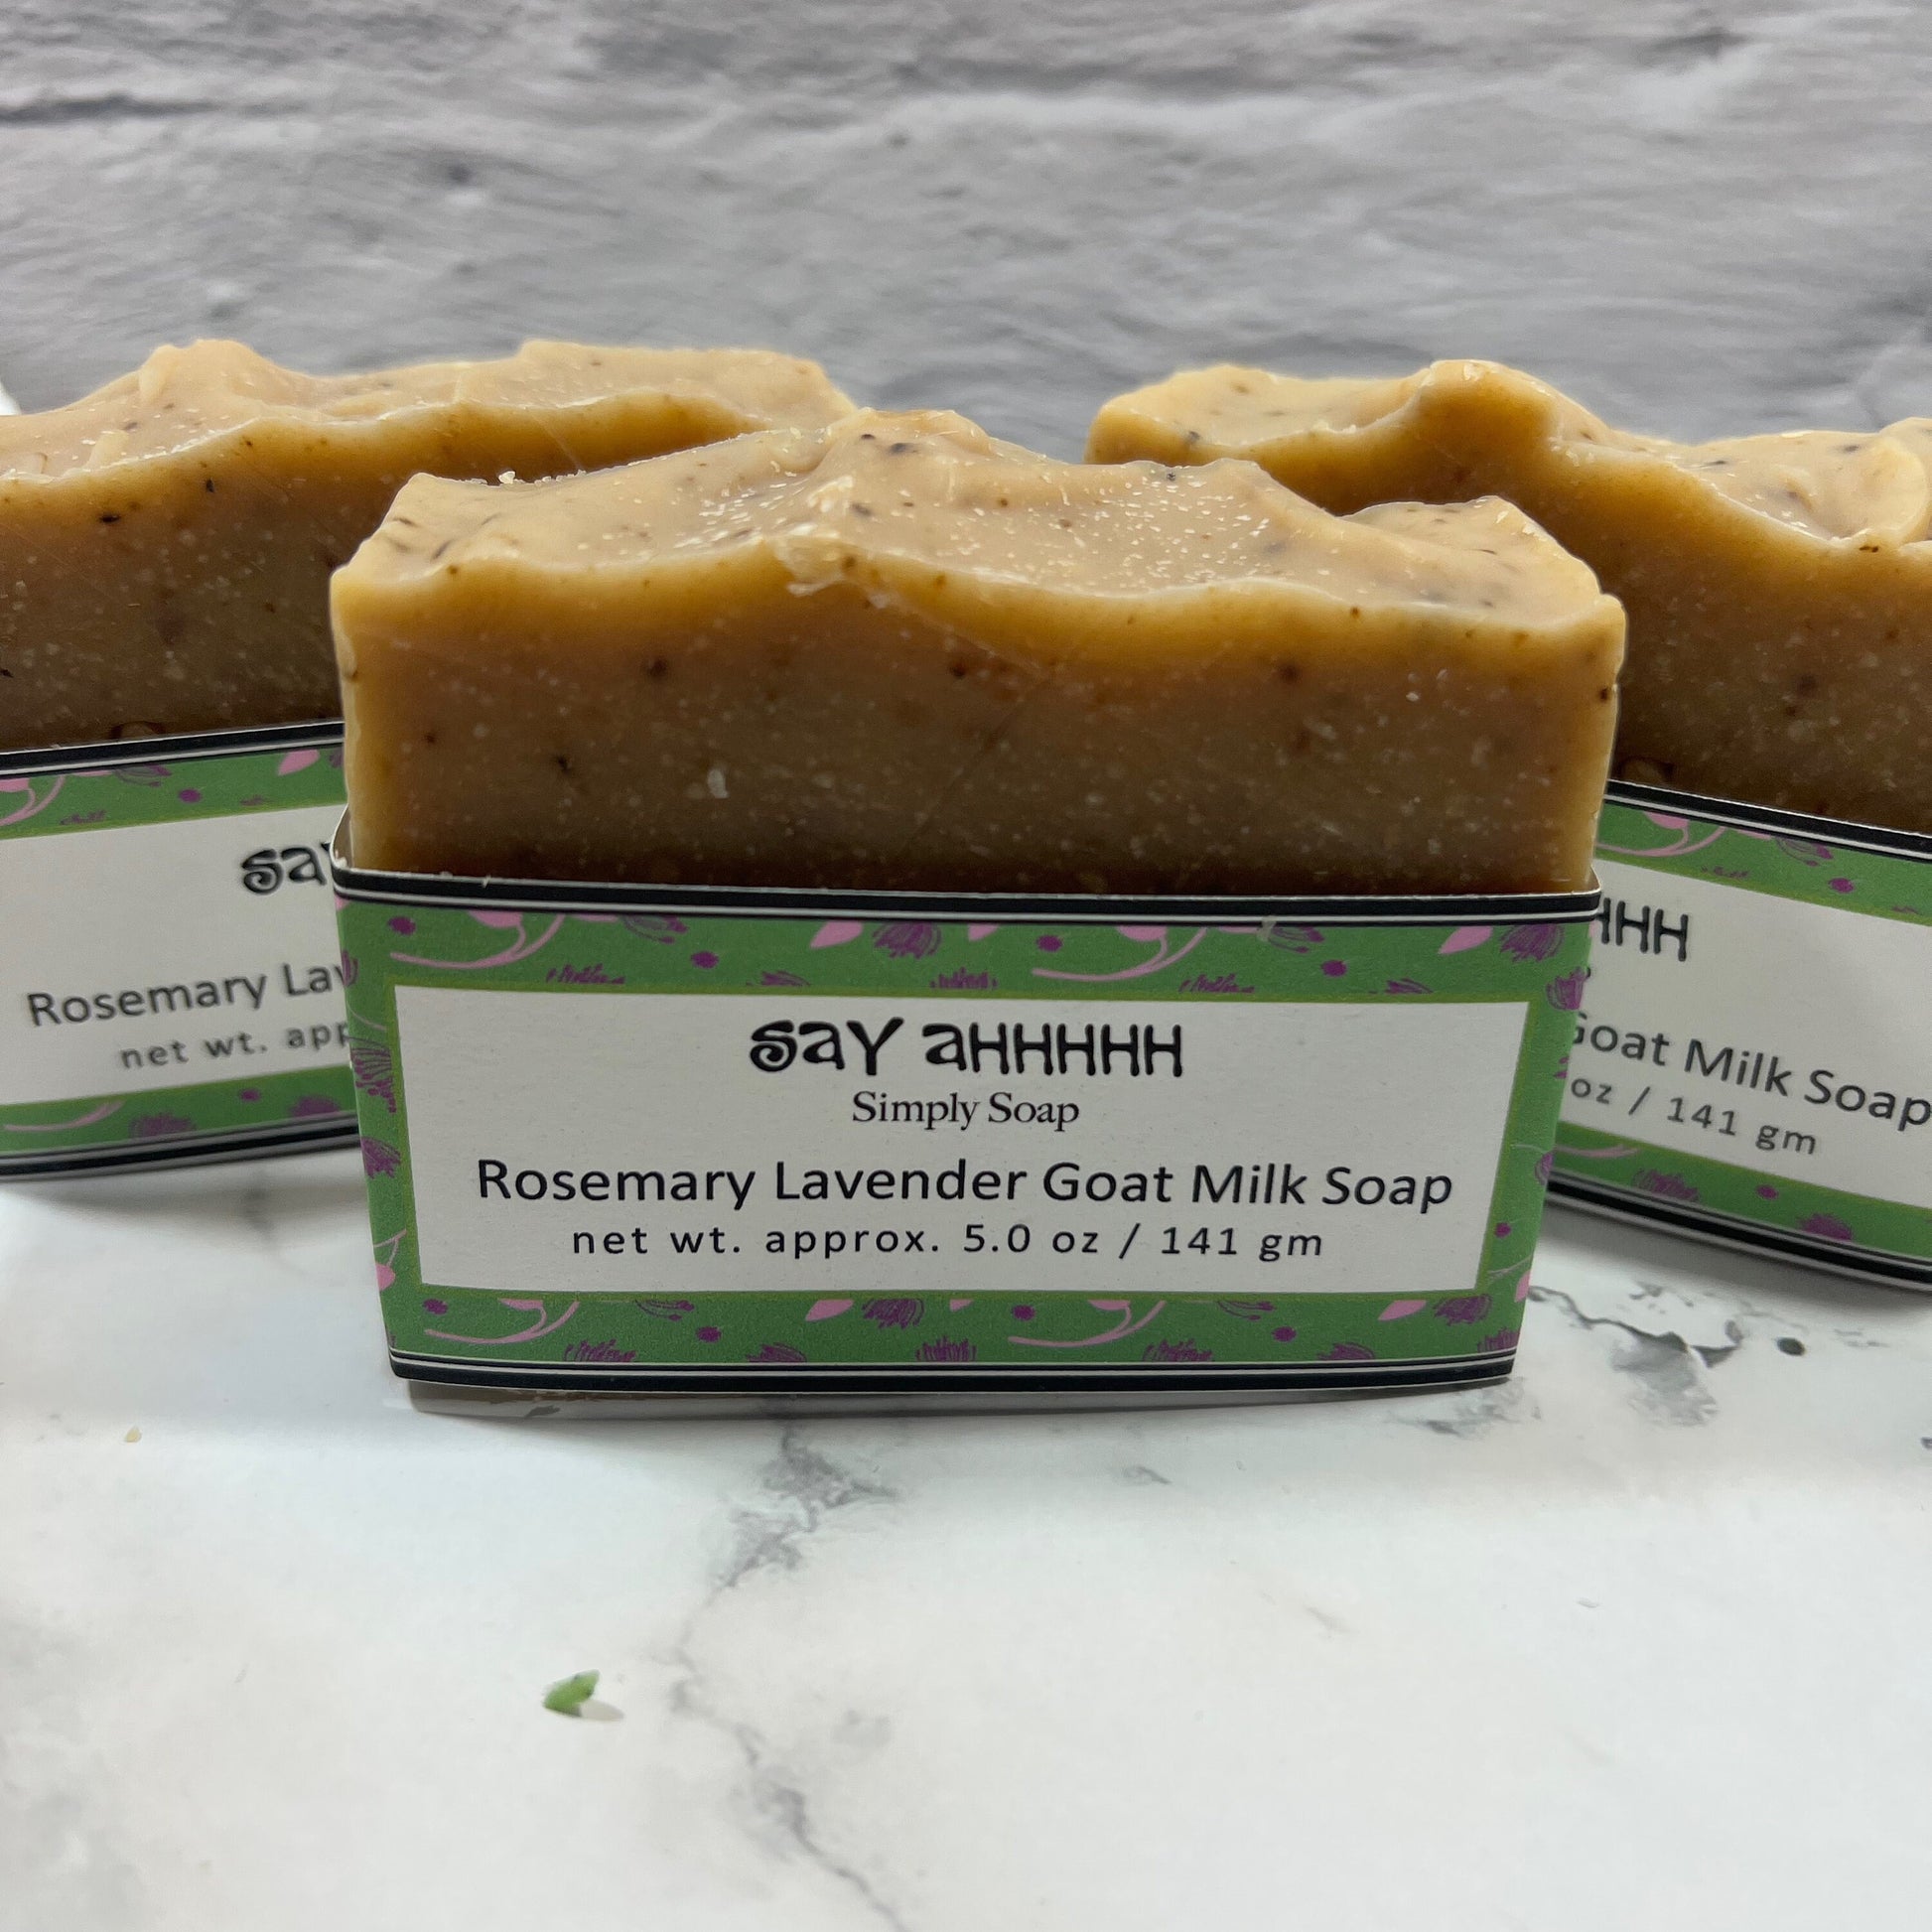 Rosemary Lavender Goat Milk Soap